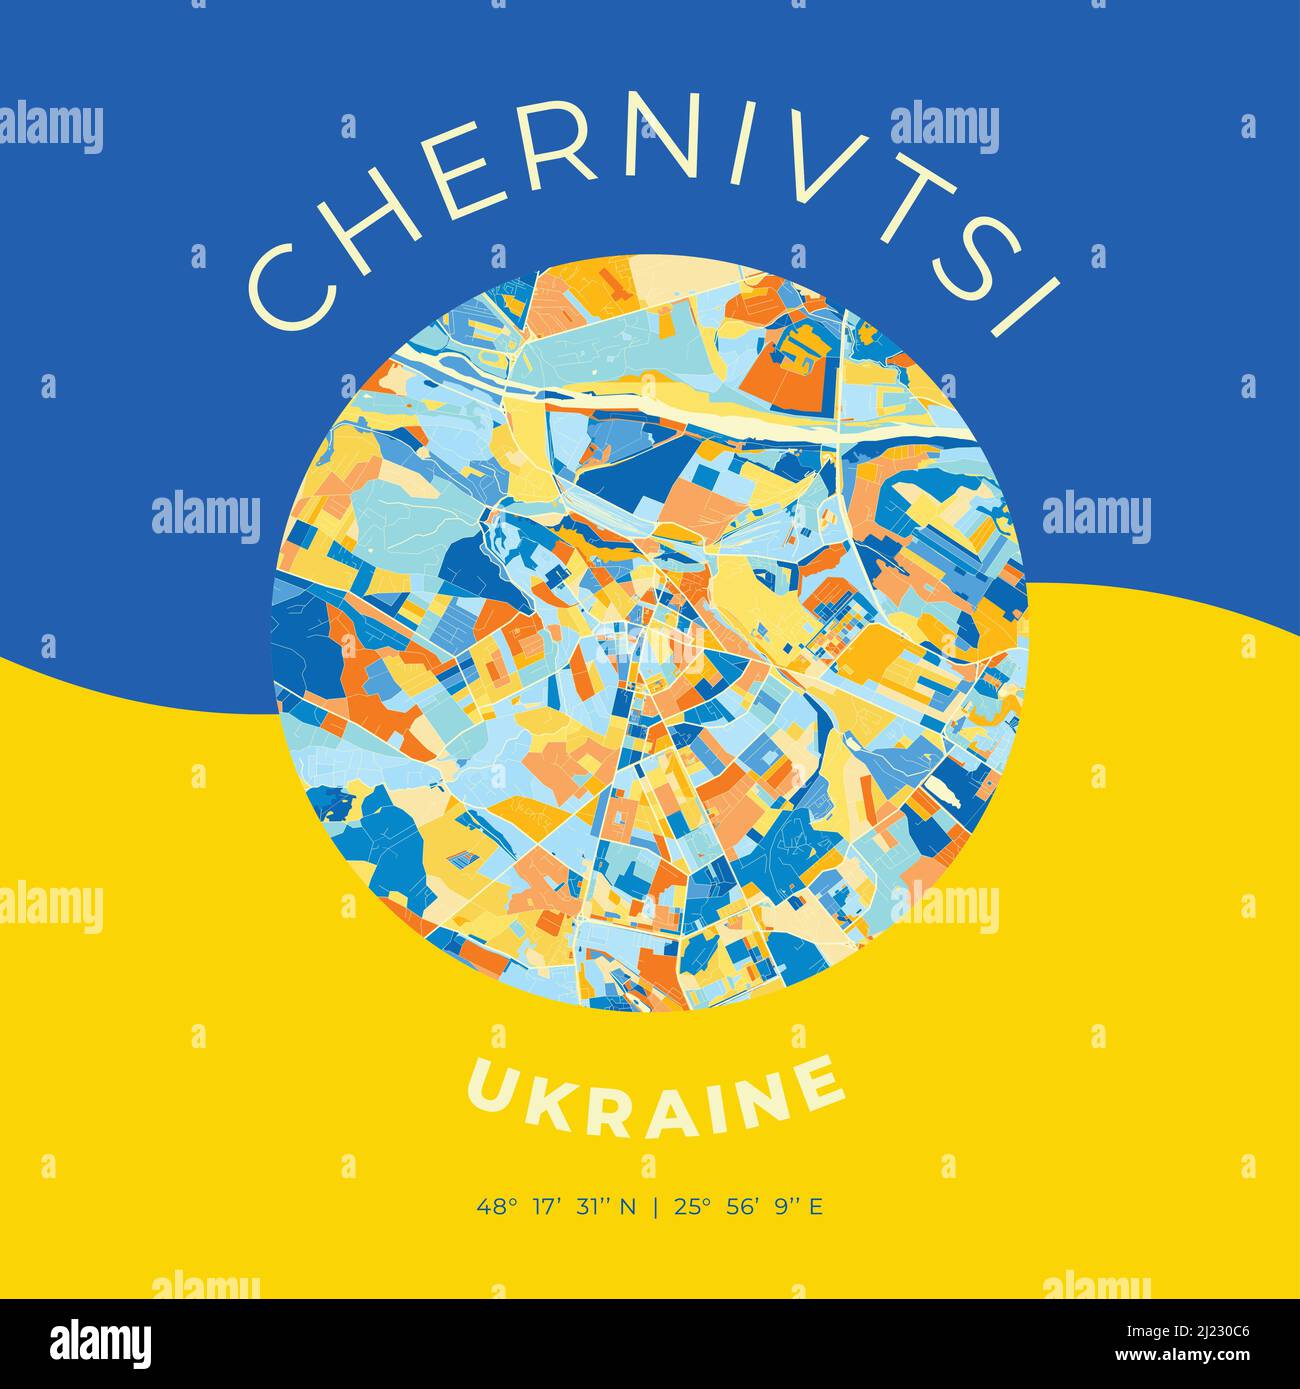 Modello di stampa vettoriale di Chernivtsi, Chernivtsi Oblast, Ucraina con colori blu, verde e giallo. Le varie tonalità seguono una principessa radom Illustrazione Vettoriale